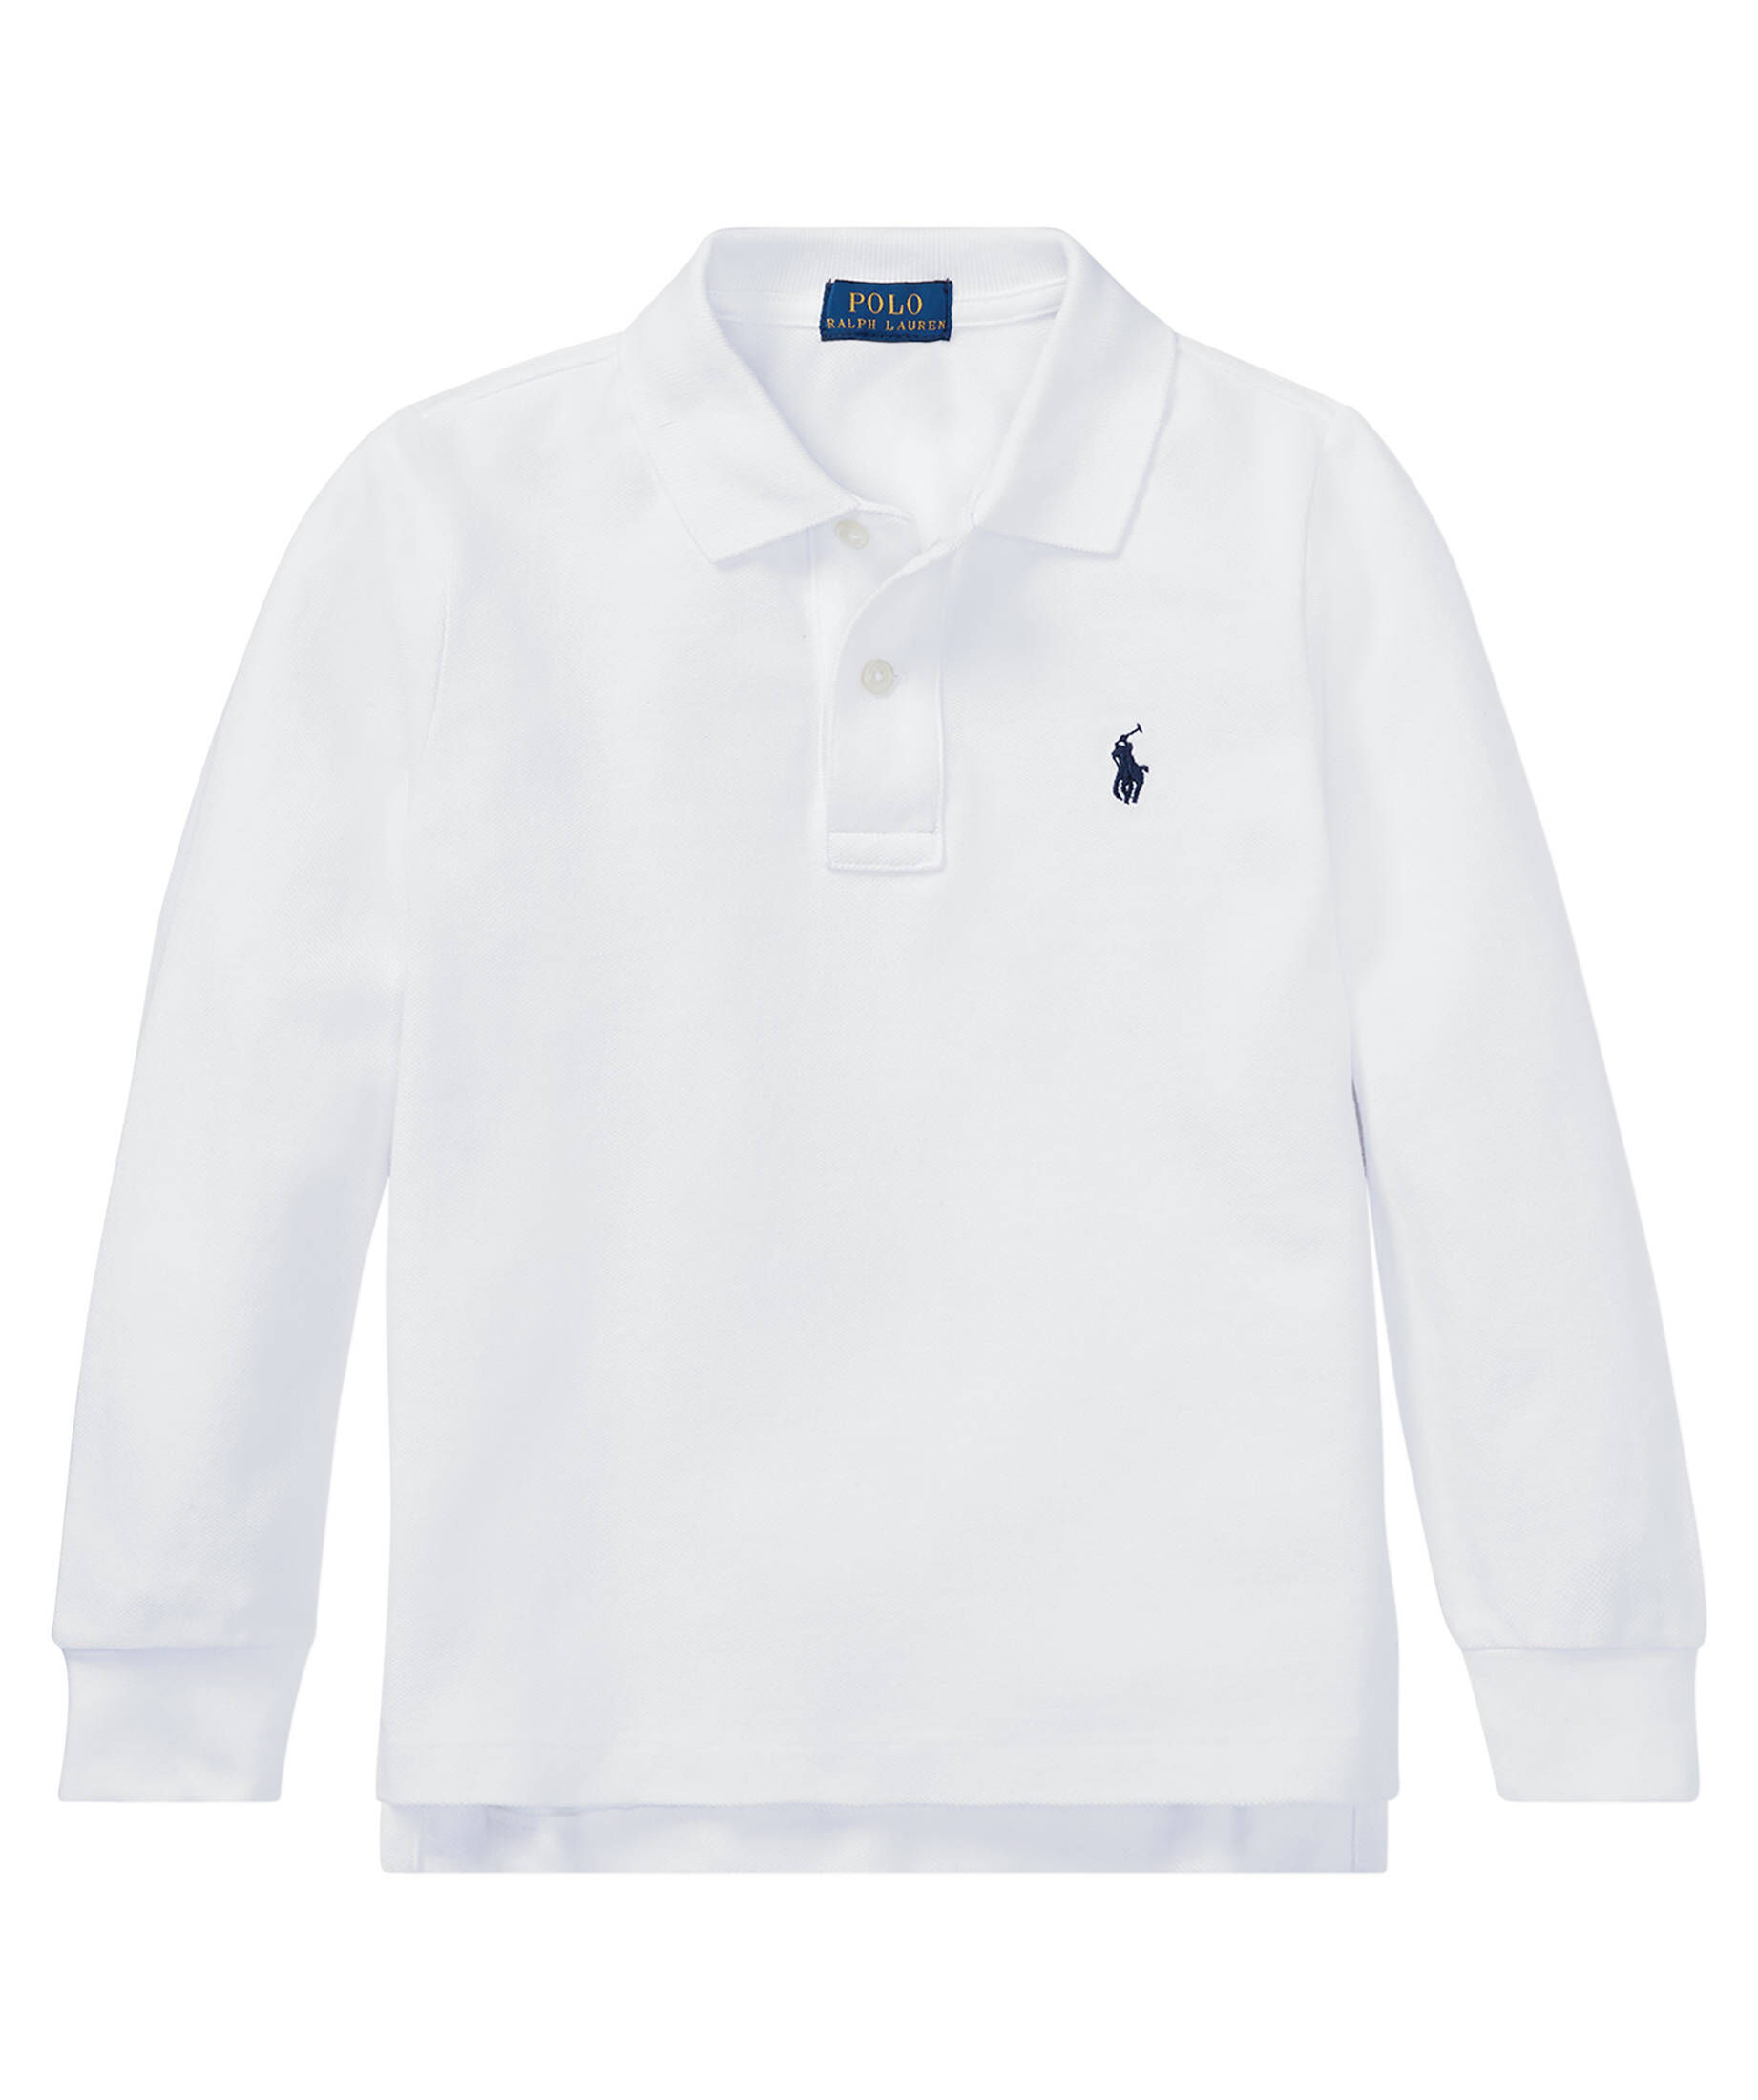 Jungen Bekleidung Shirts Poloshirts Polo Ralph Lauren Jungen Poloshirt Gr DE 74 